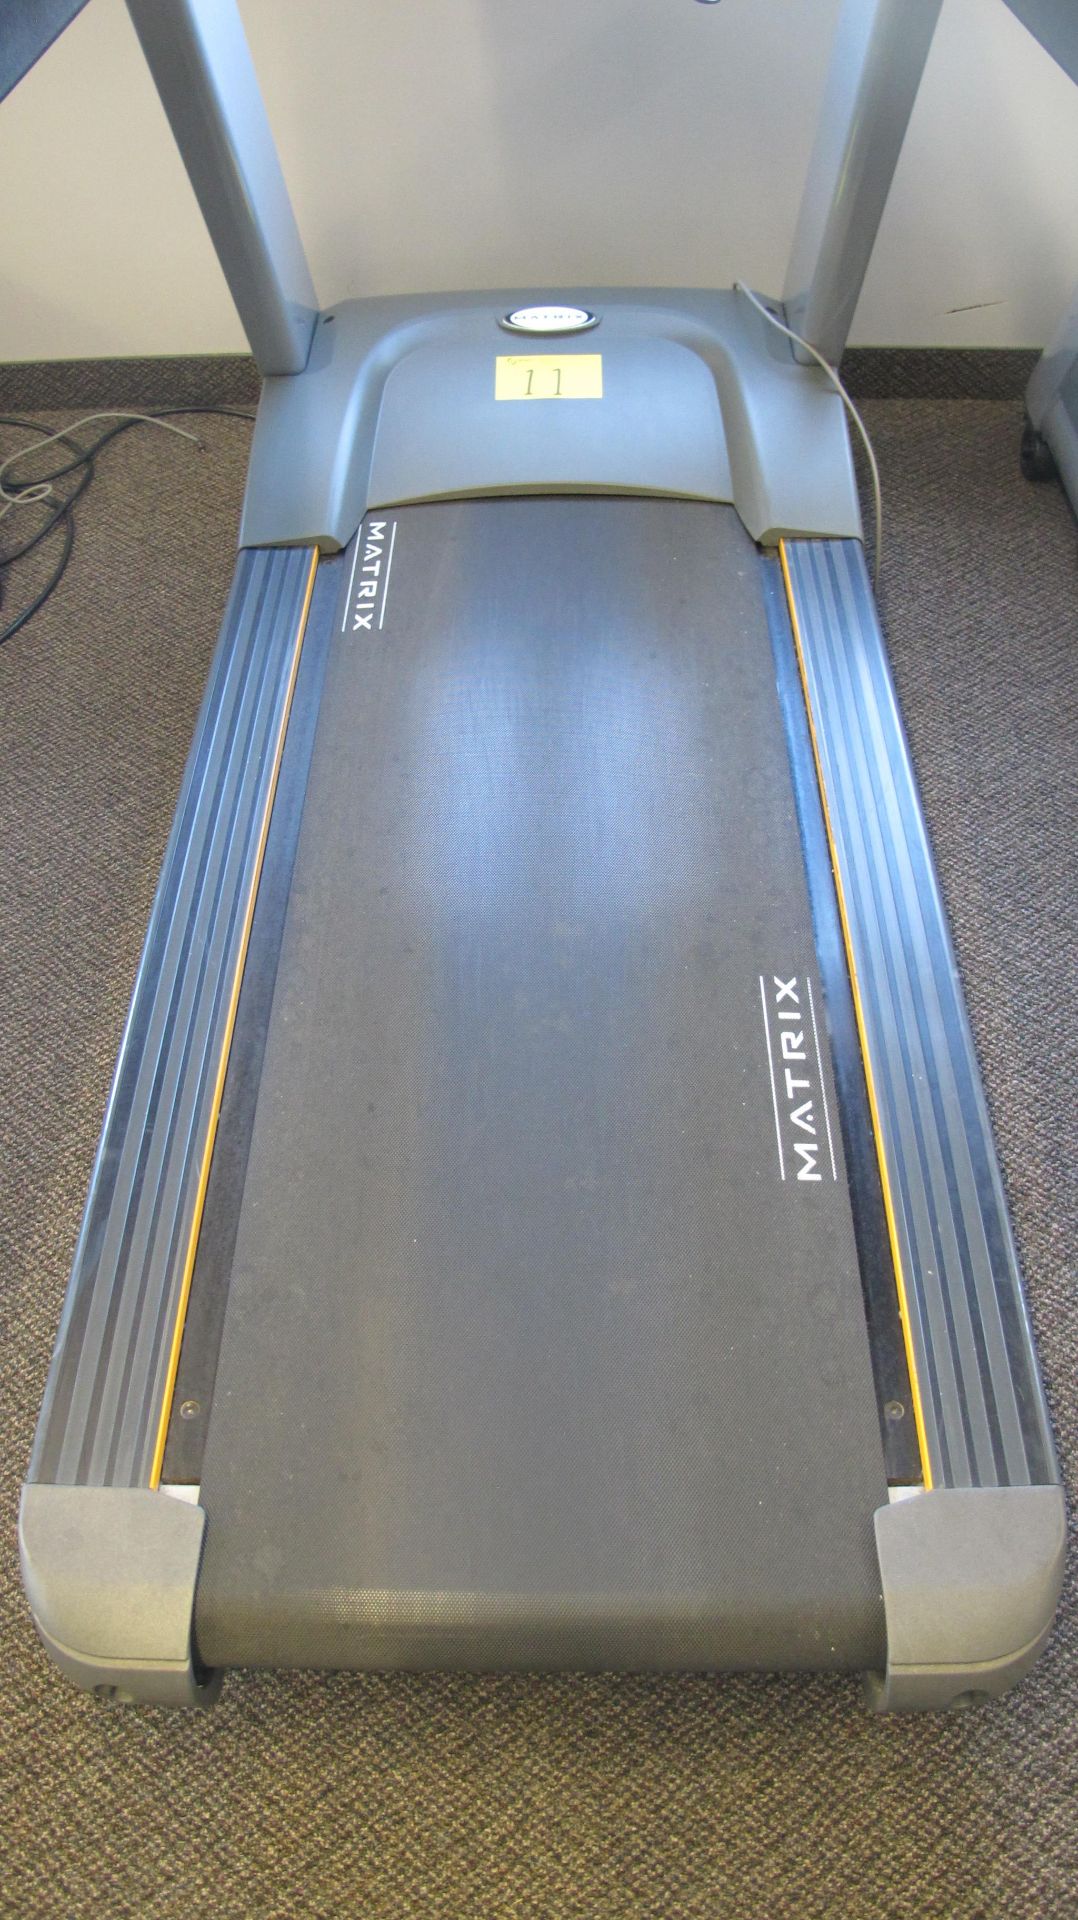 MATRIX T-5X-7X-03-F Ultimate Deck Treadmill w/ Incline, Digital Display, TV Screen w/ Satellite - Image 5 of 11